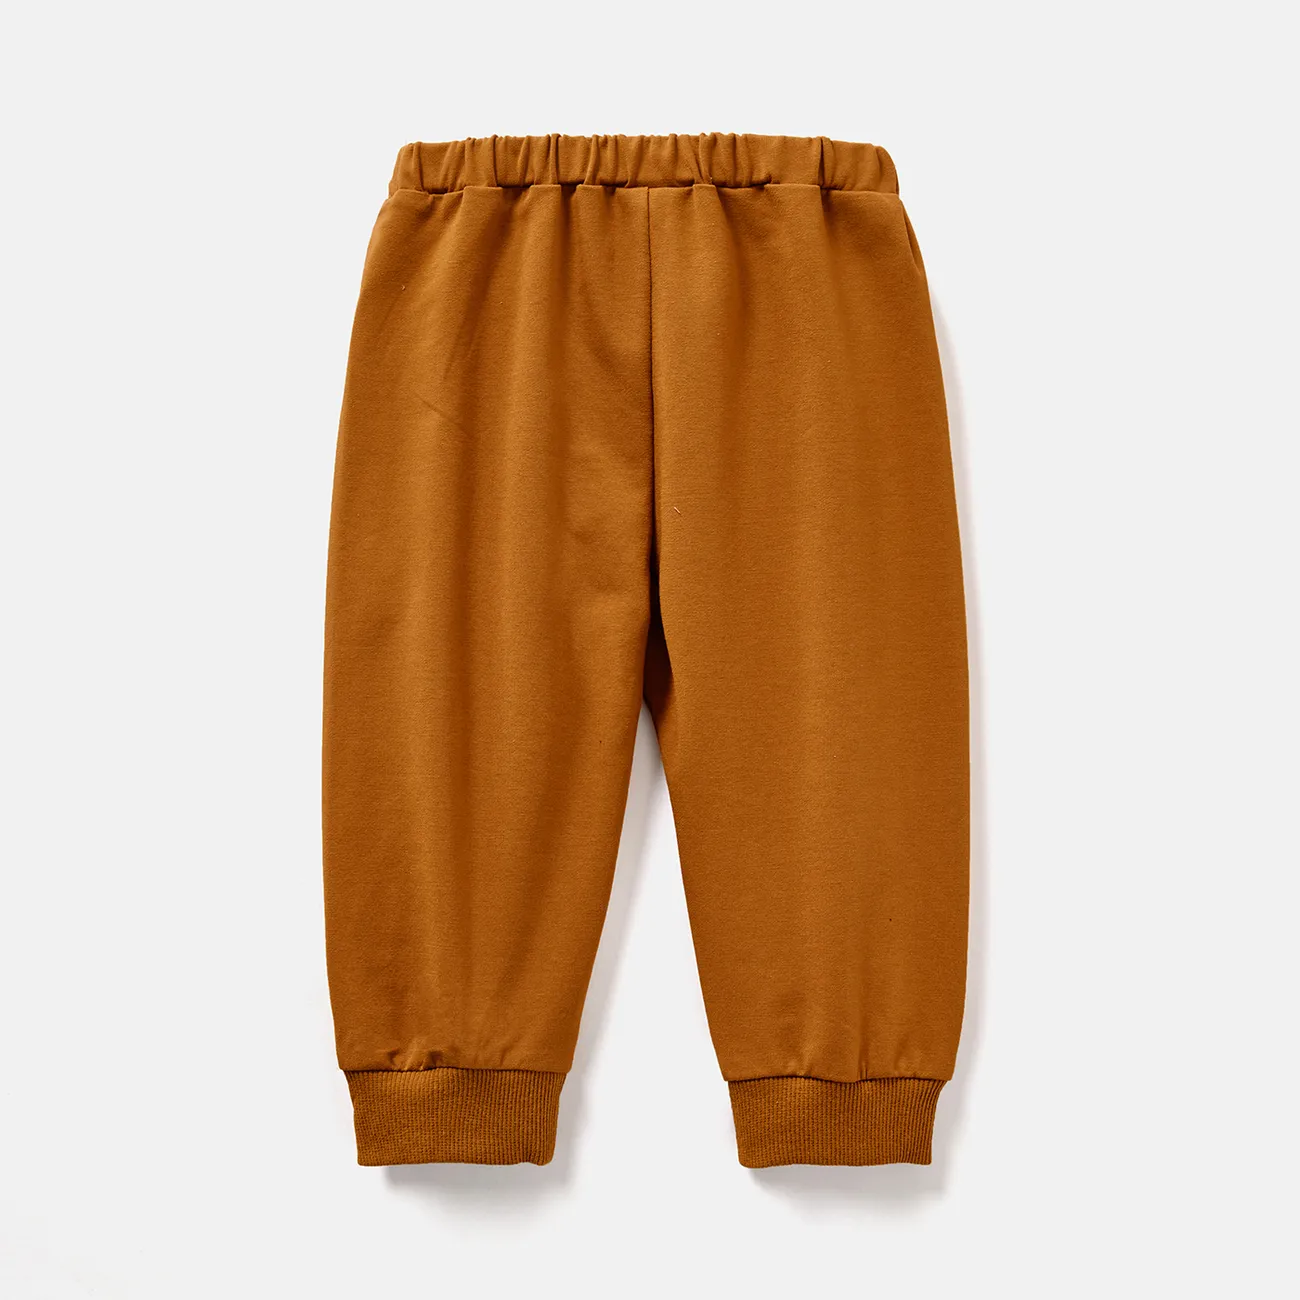 Einfarbige elastische Hosen aus Baumwolle für Mädchen/Jungen braun big image 1